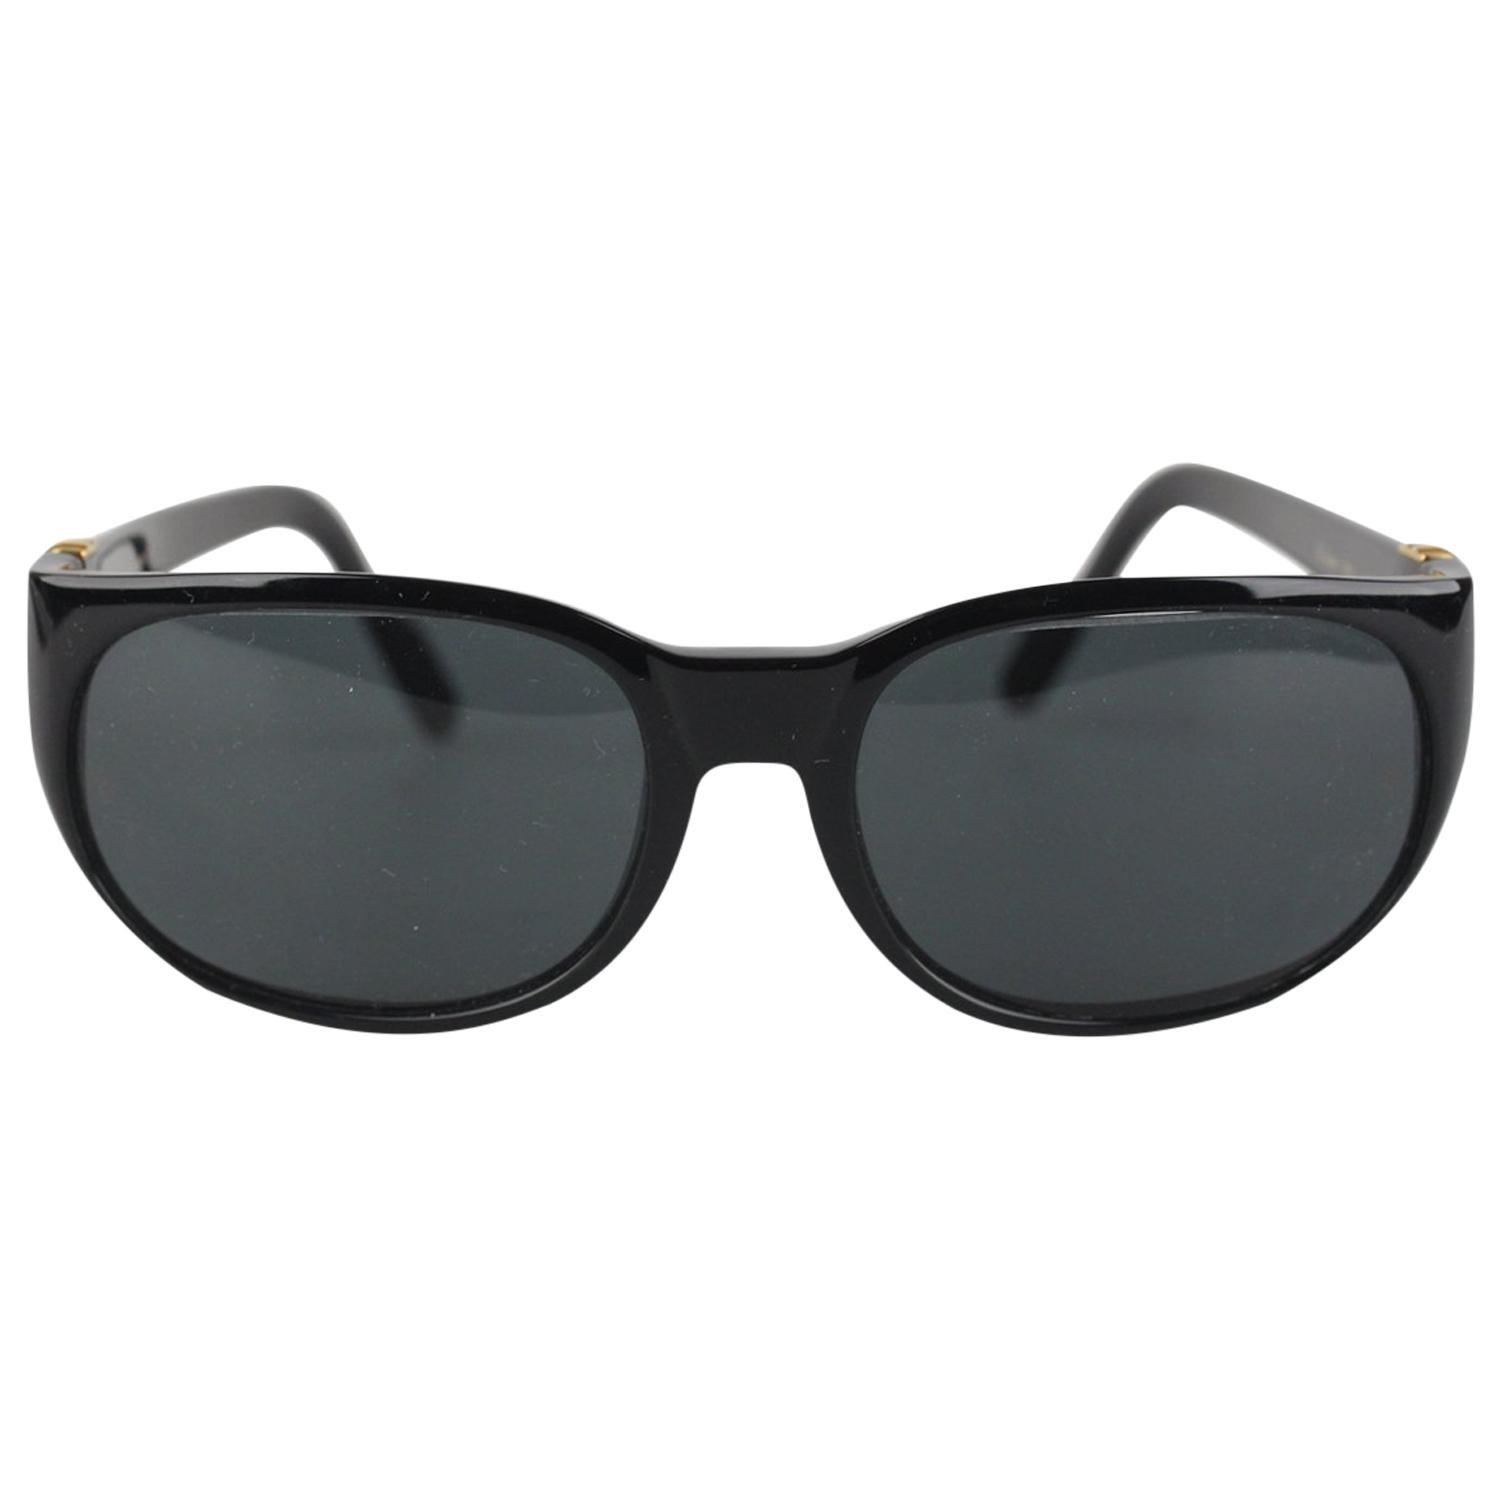 Cartier Paris Black Unisex Sunglasses Noir T8200184 New Old Stock